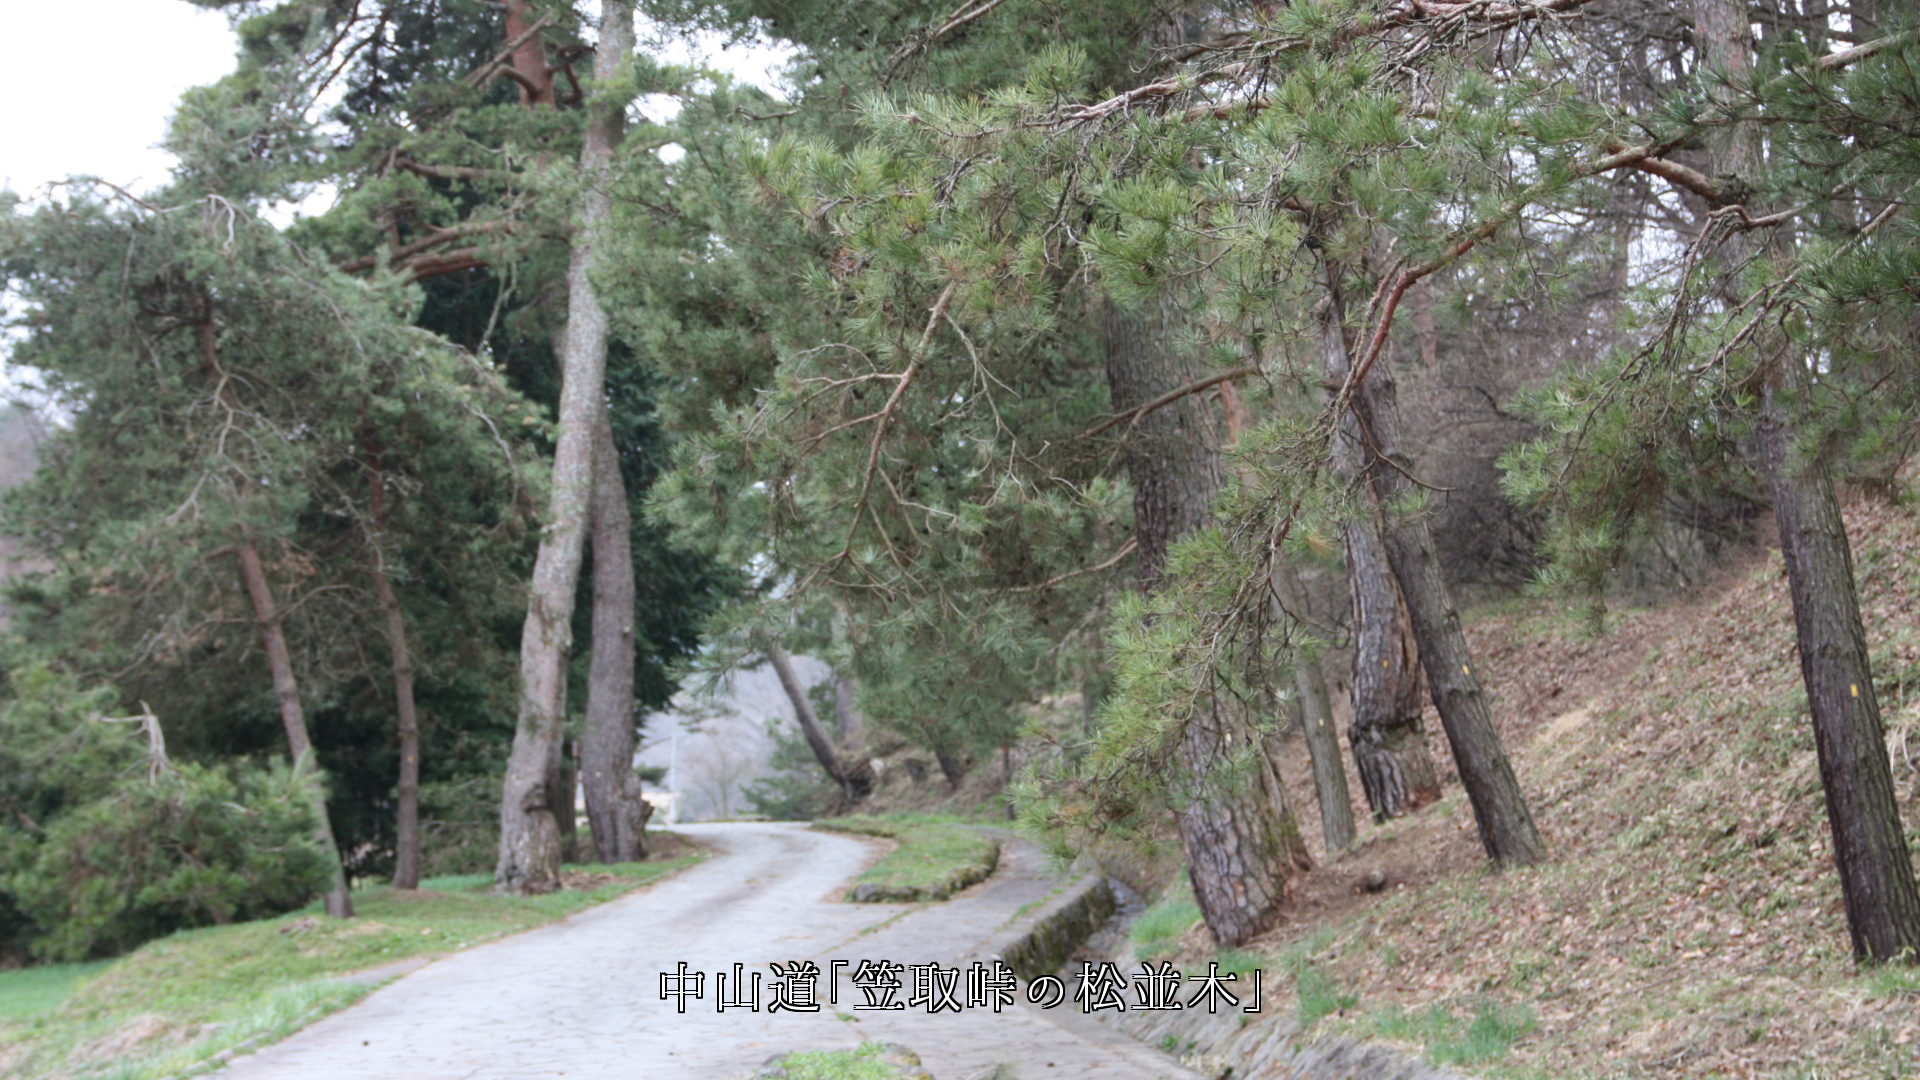 江戸時代の旧街道　常緑樹の杉並木と松並木　旅の苦労が伝わってくる